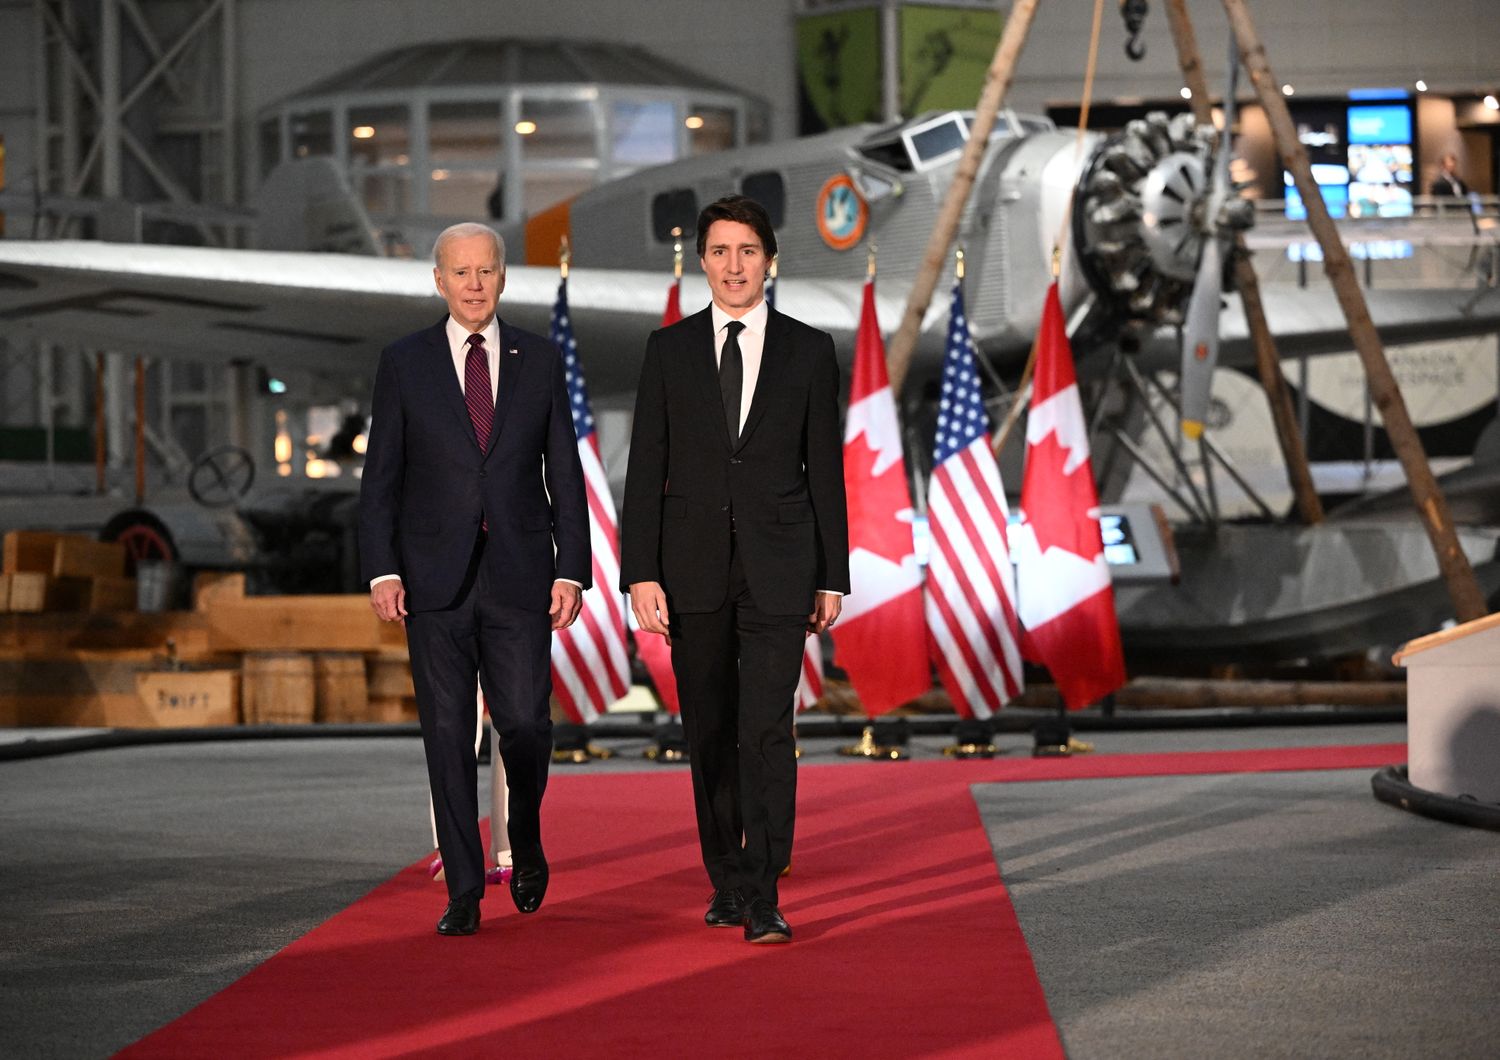 Biden in visita ufficiale a Ottawa